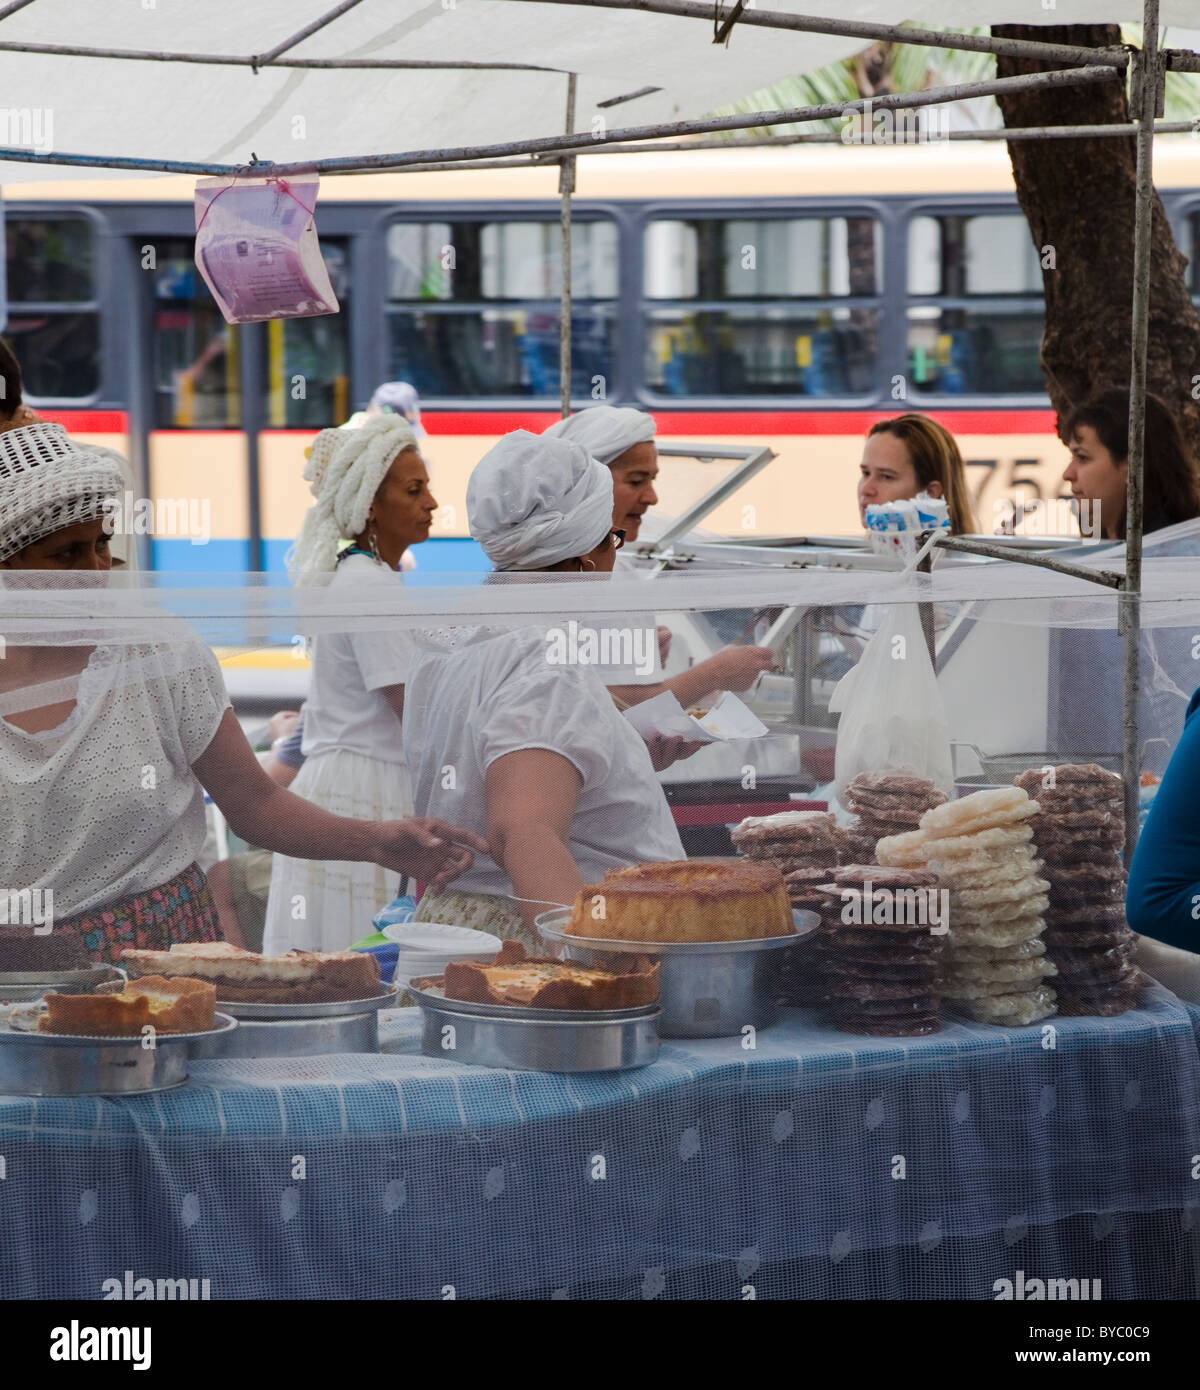 Garküche auf dem Markt in Praça General Osório, Stadtteil Ipanema, Rio De Janeiro, Brasilien, Südamerika. Stockfoto